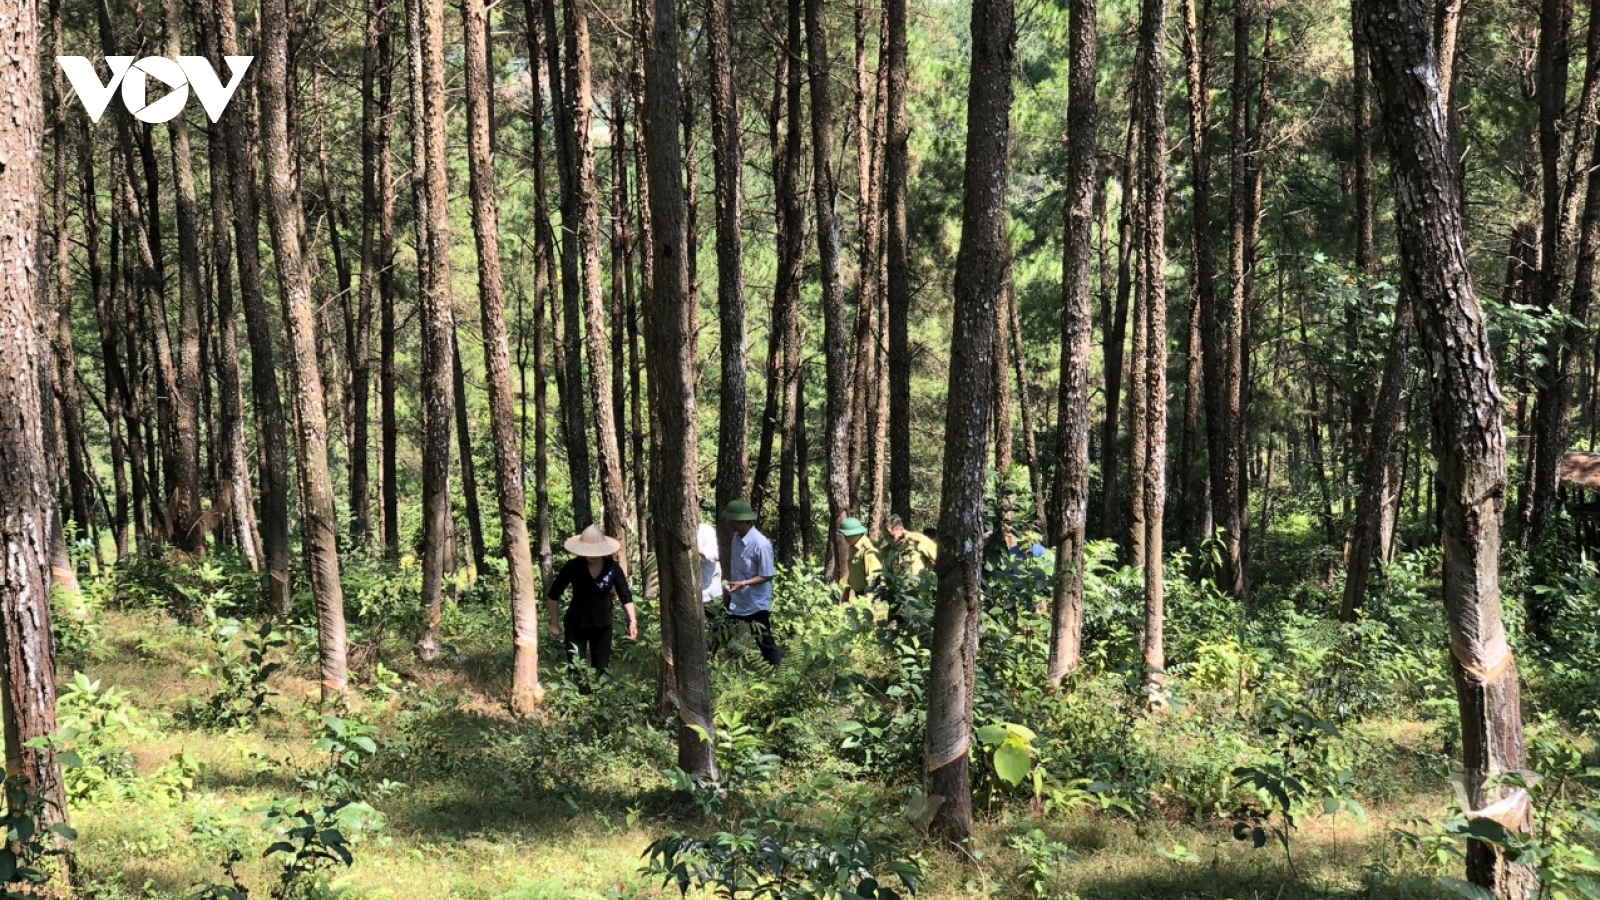 Kinh tế rừng Bắc Kạn: Thay đổi để phát triển bền vững